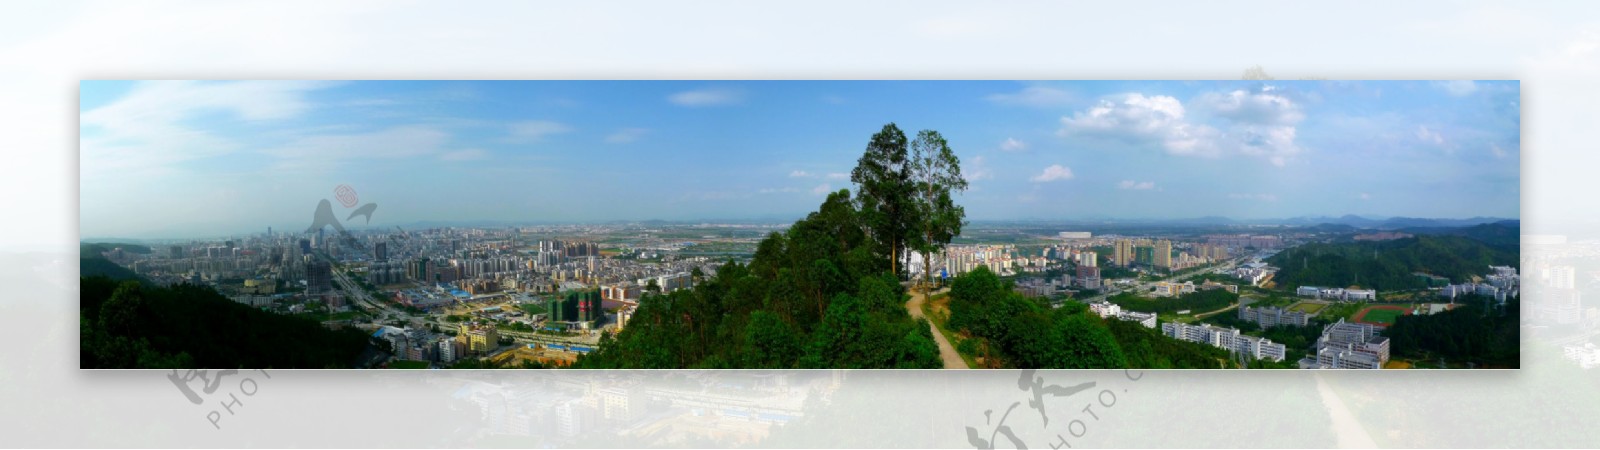 惠州全景图一图片